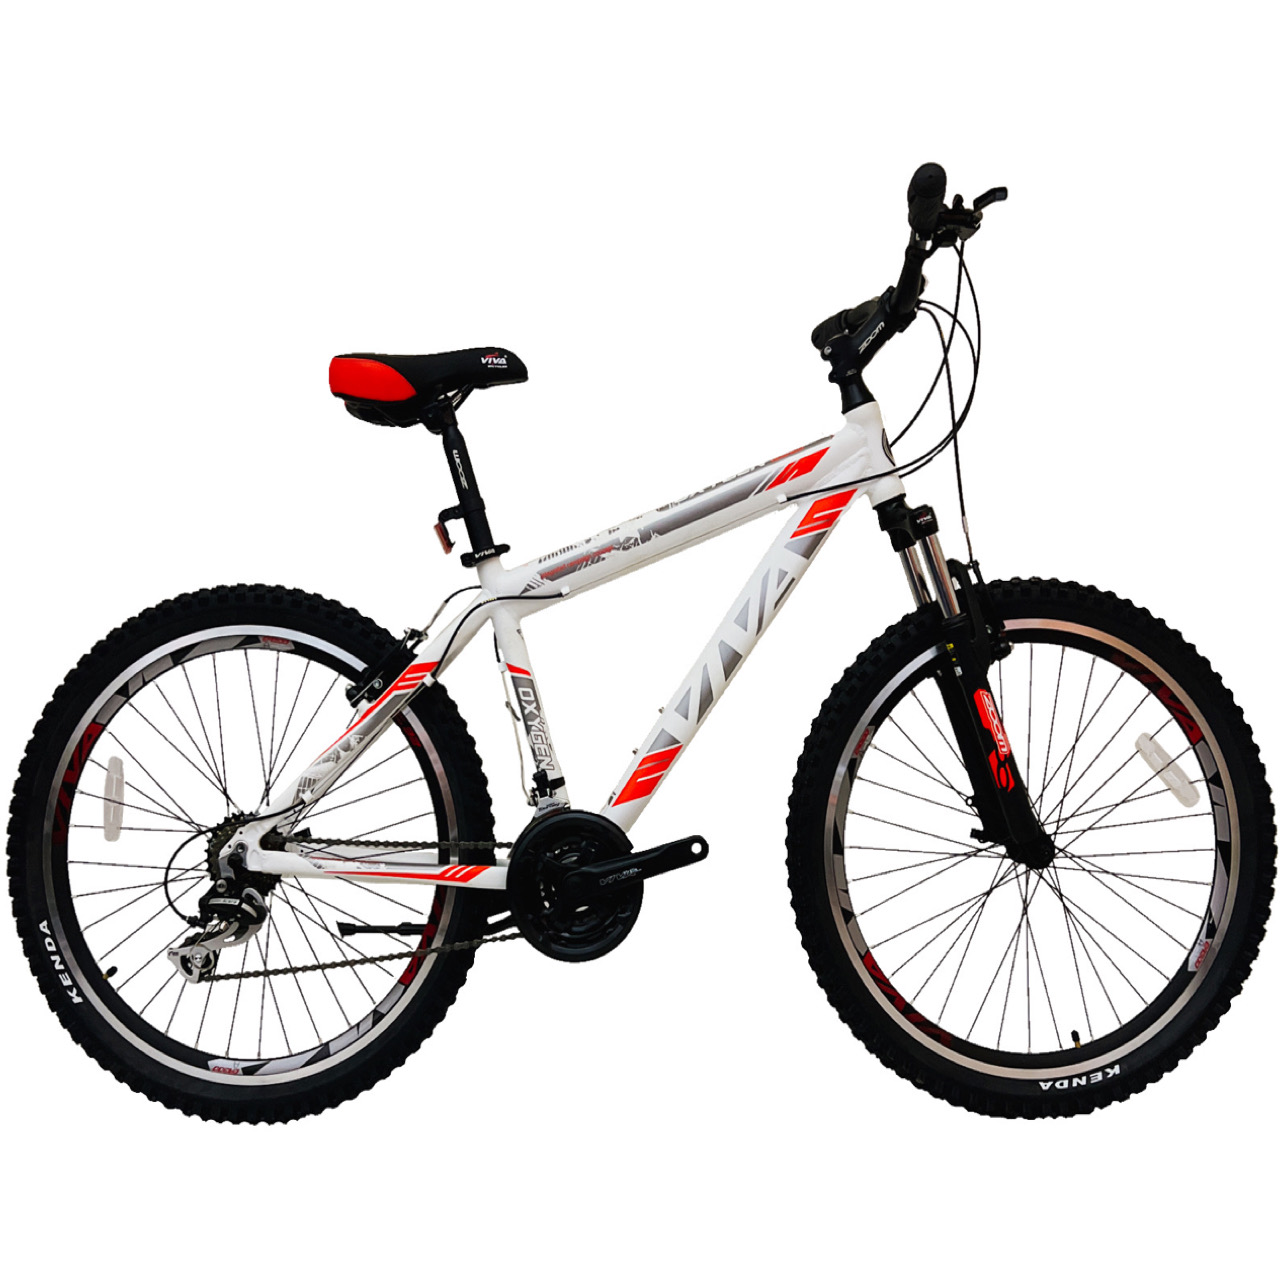 نکته خرید - قیمت روز دوچرخه کوهستان ویوا مدل OXYGEN کد 100 سایز 26 خرید